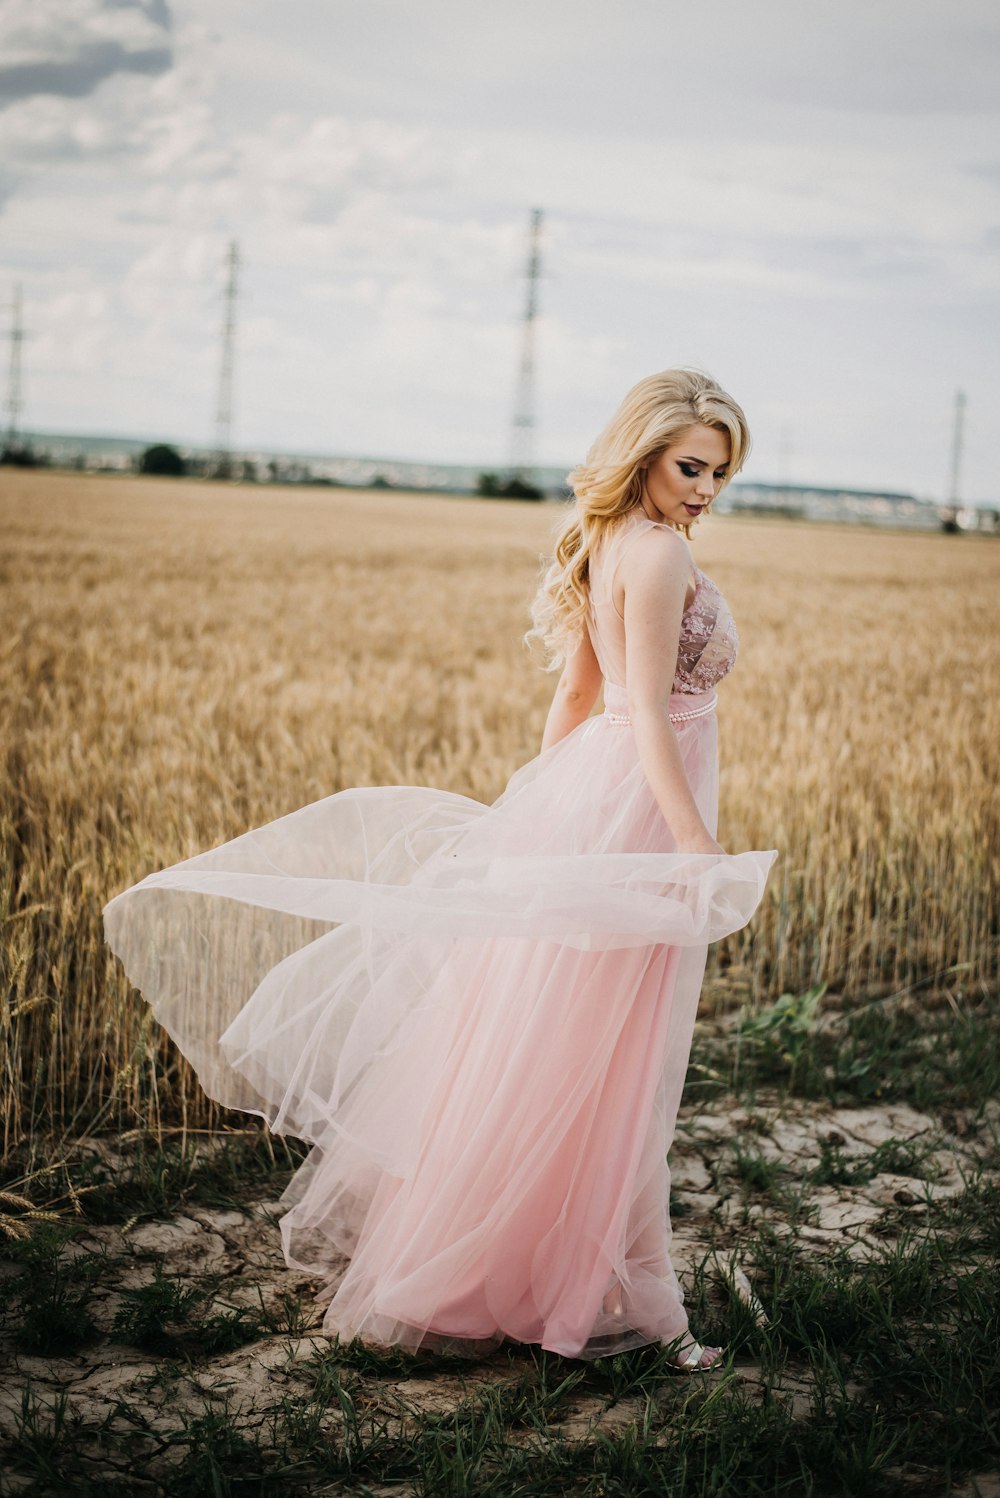 小麦畑のそばに立つピンクのエンパイアウエストドレスを着た女性